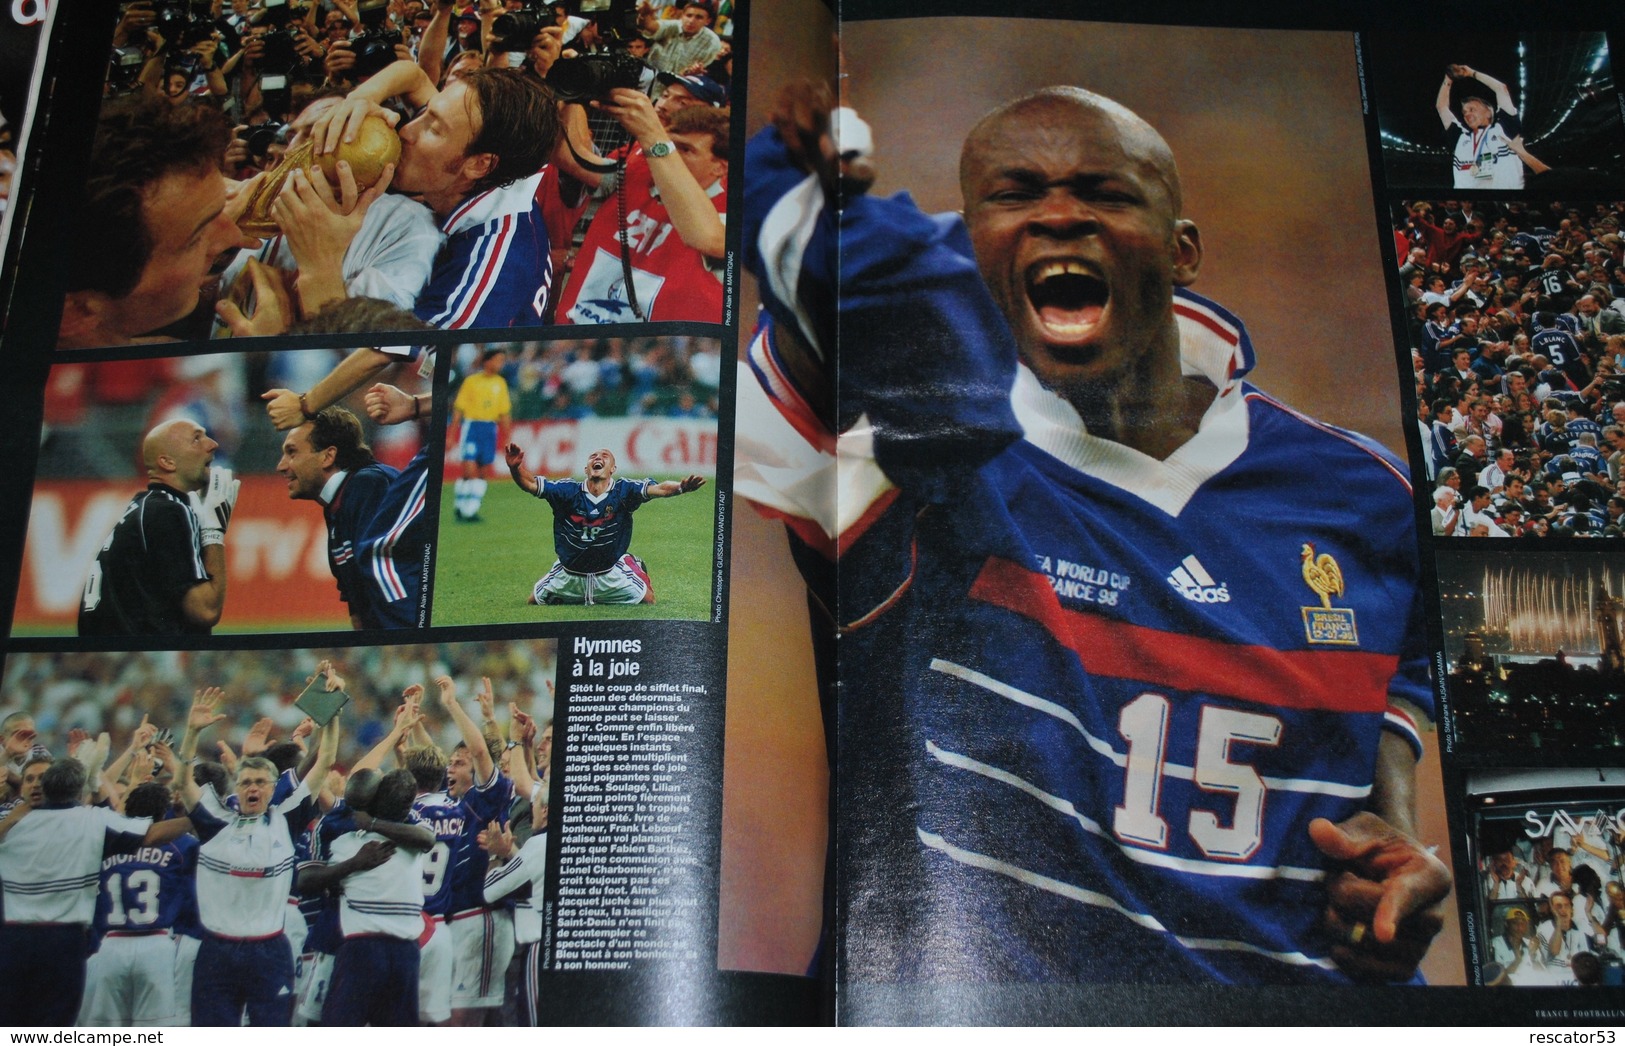 rare lot de 3 revue frnace 98 france football spécial coupe du monde 1998 et ouest-france guide mondial 98